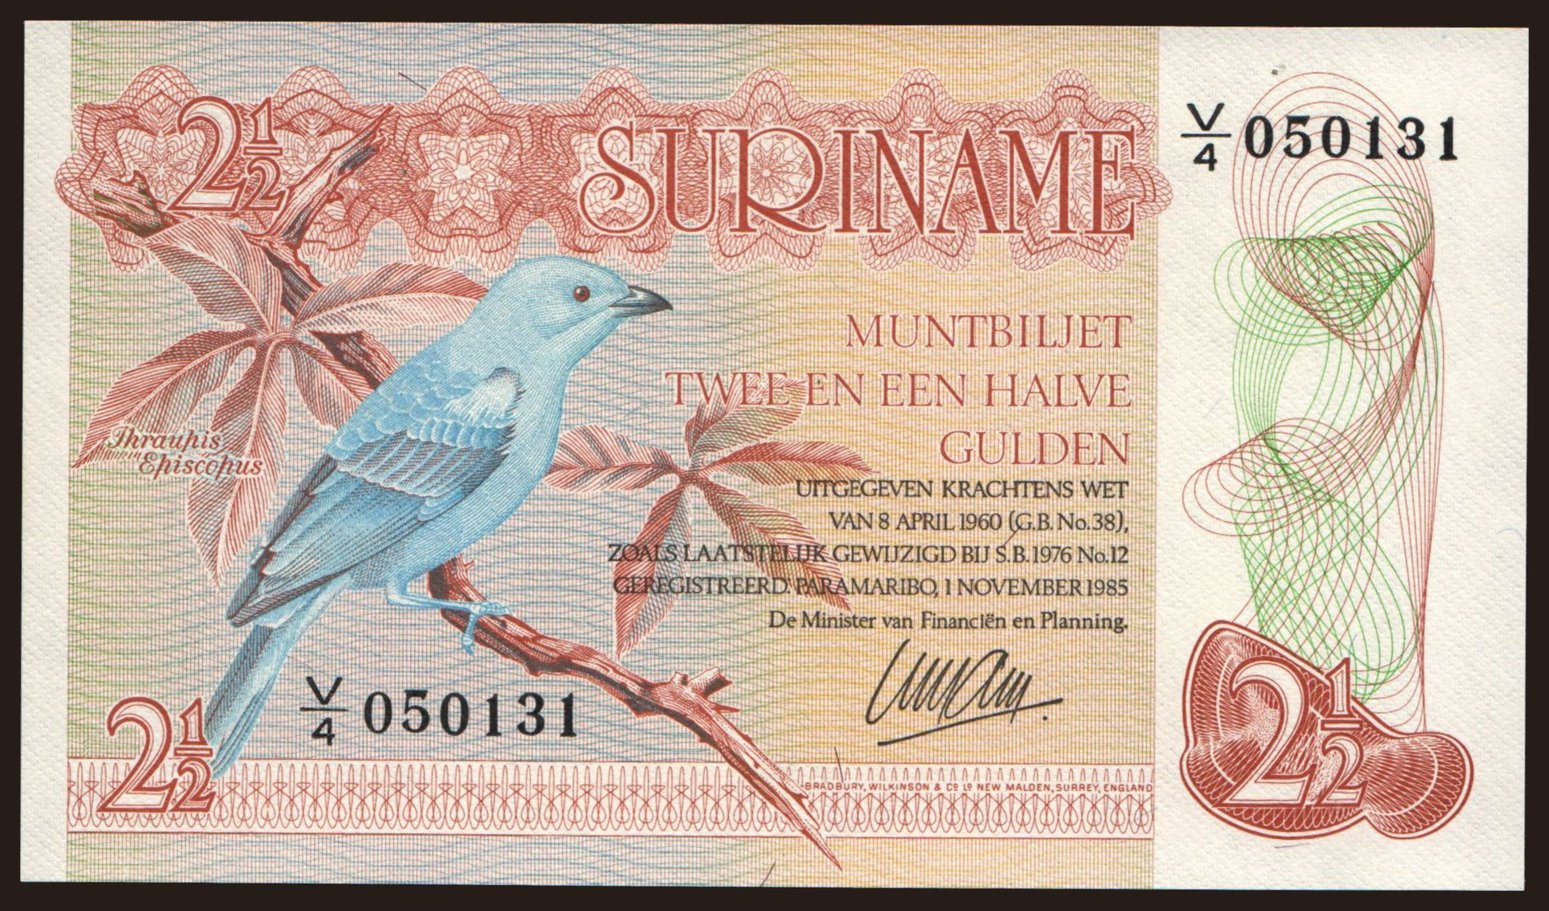 2 1/2 gulden, 1985